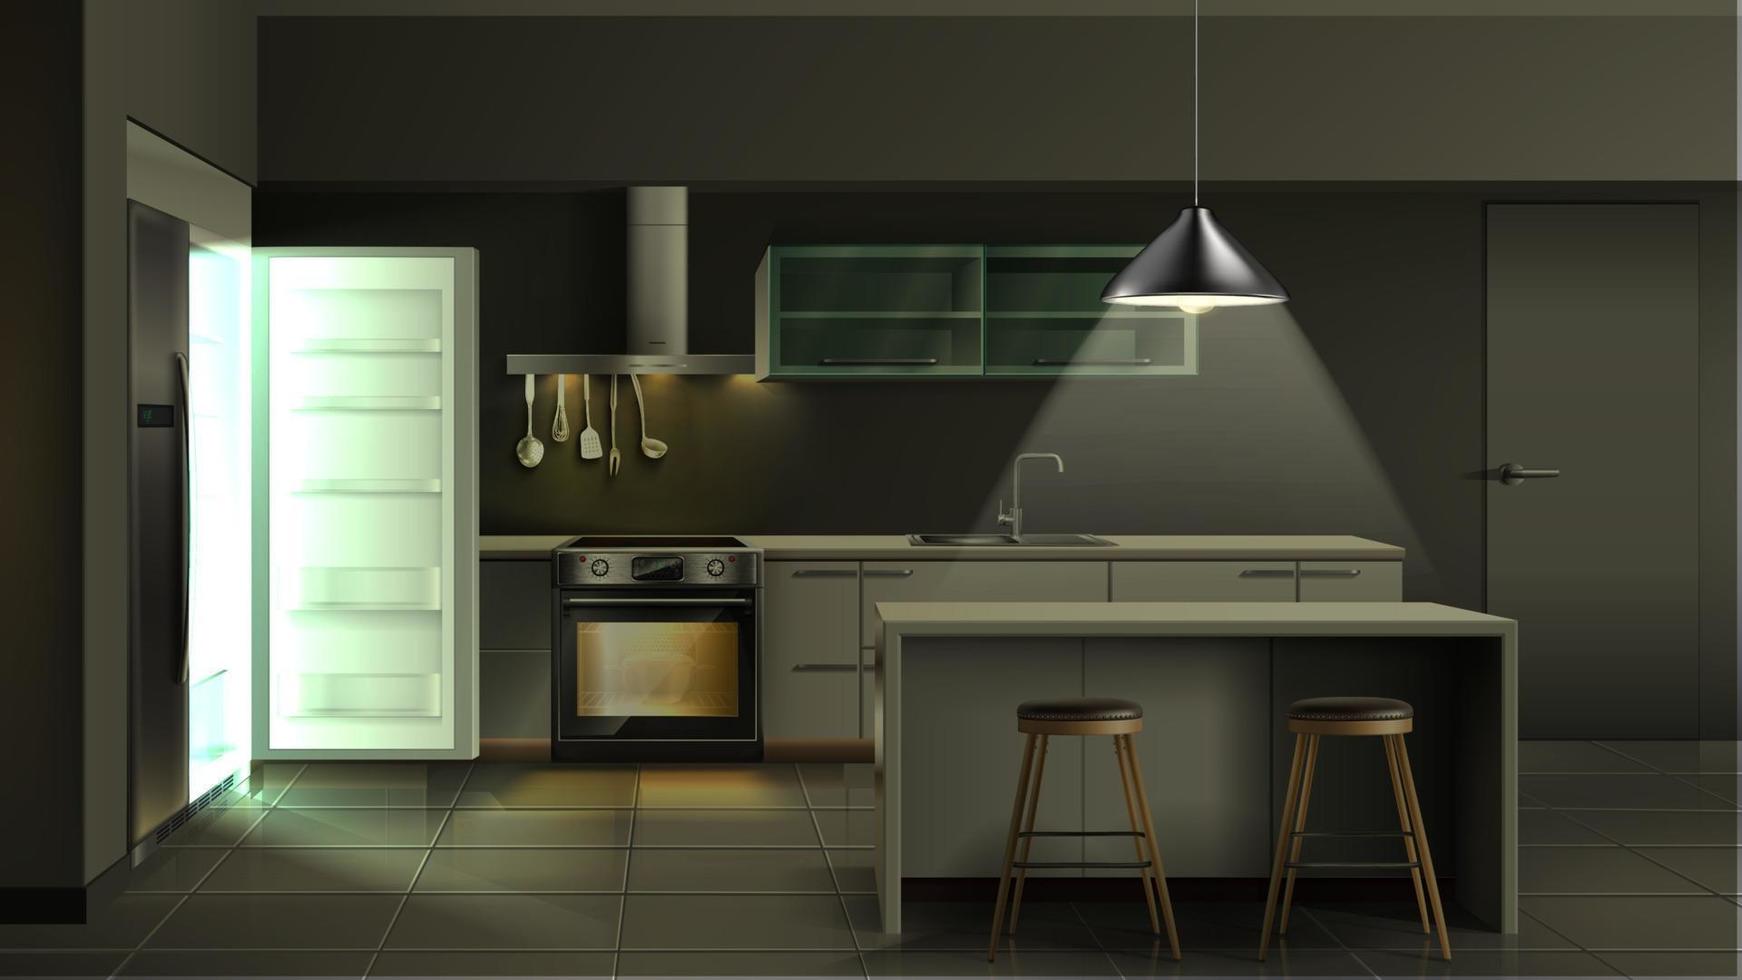 vector interior de cozinha realista moderna à noite com geladeira aberta com luz com utensílios, forno com luz, armários e prateleiras com bancos de bar e mesa de bar.